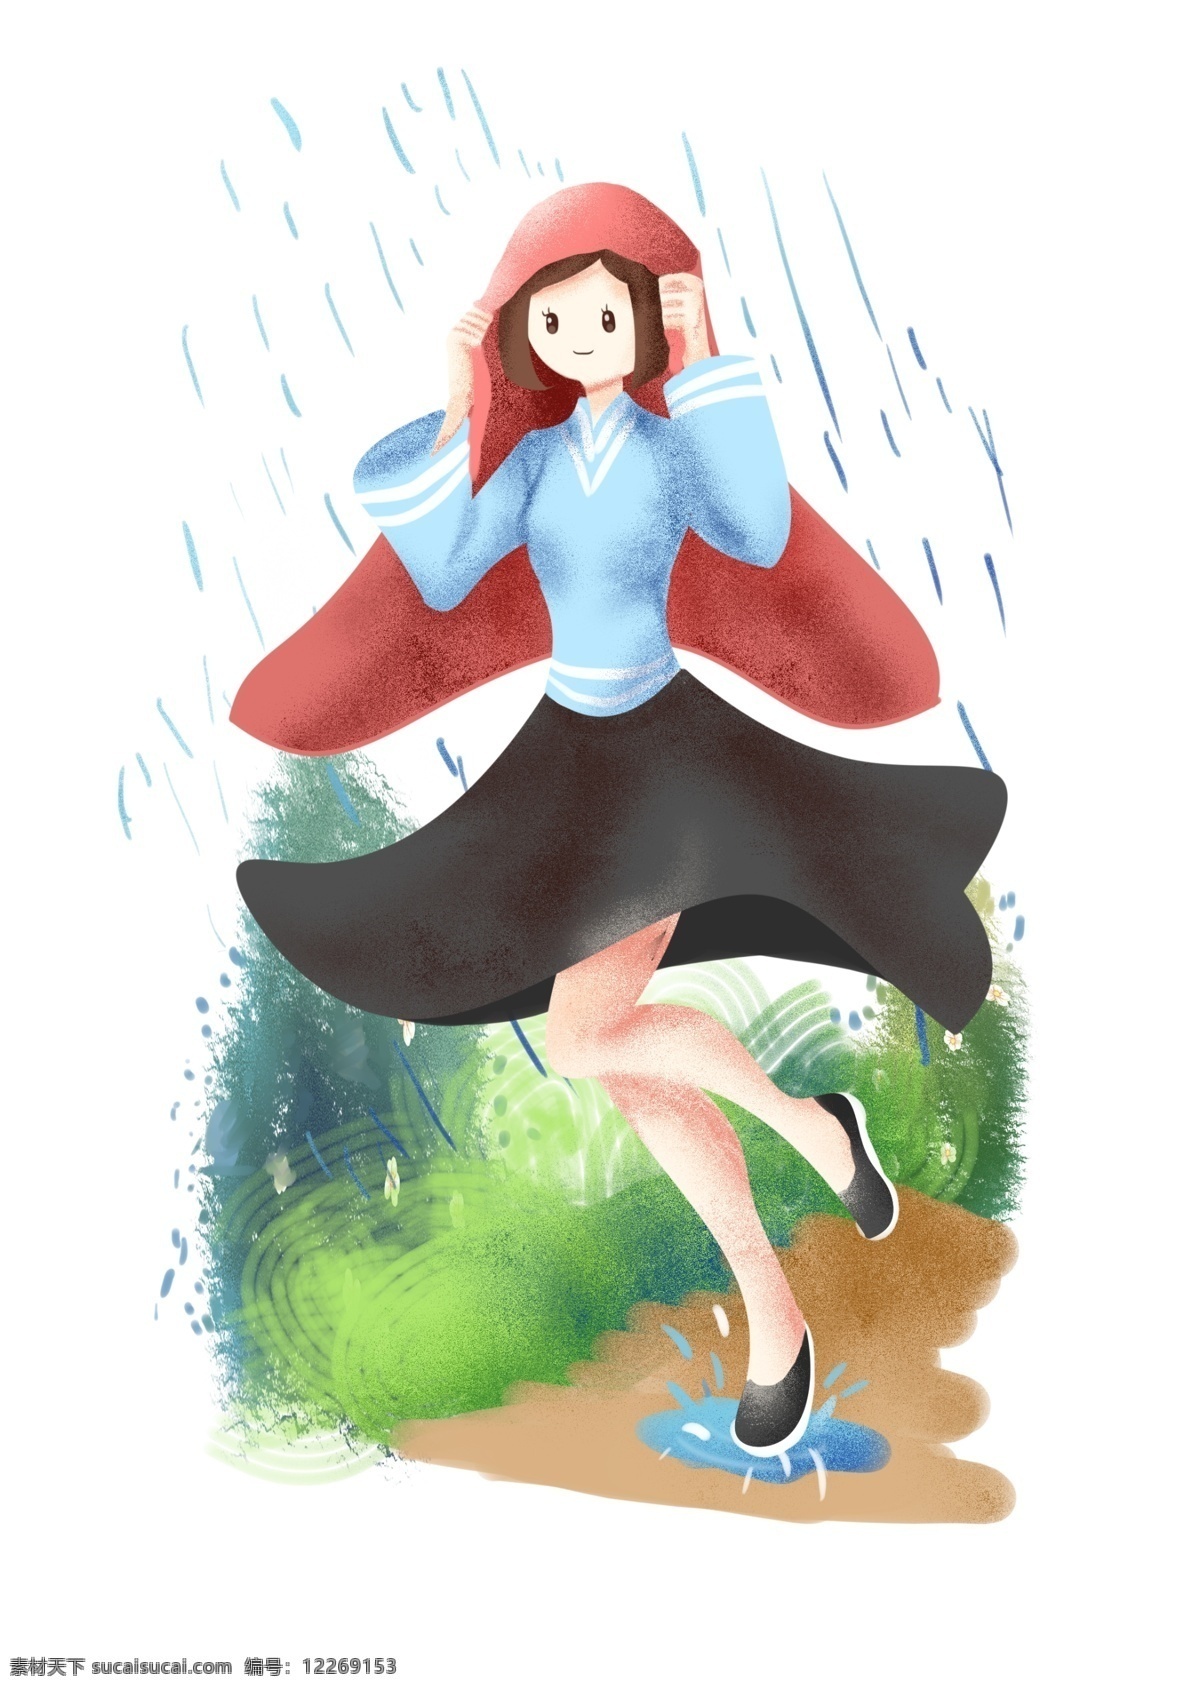 谷雨 节气 帽子 插画 红色的帽子 卡通的插画 谷雨插画 谷雨下雨 谷雨节气 下雨天气 躲雨的女孩